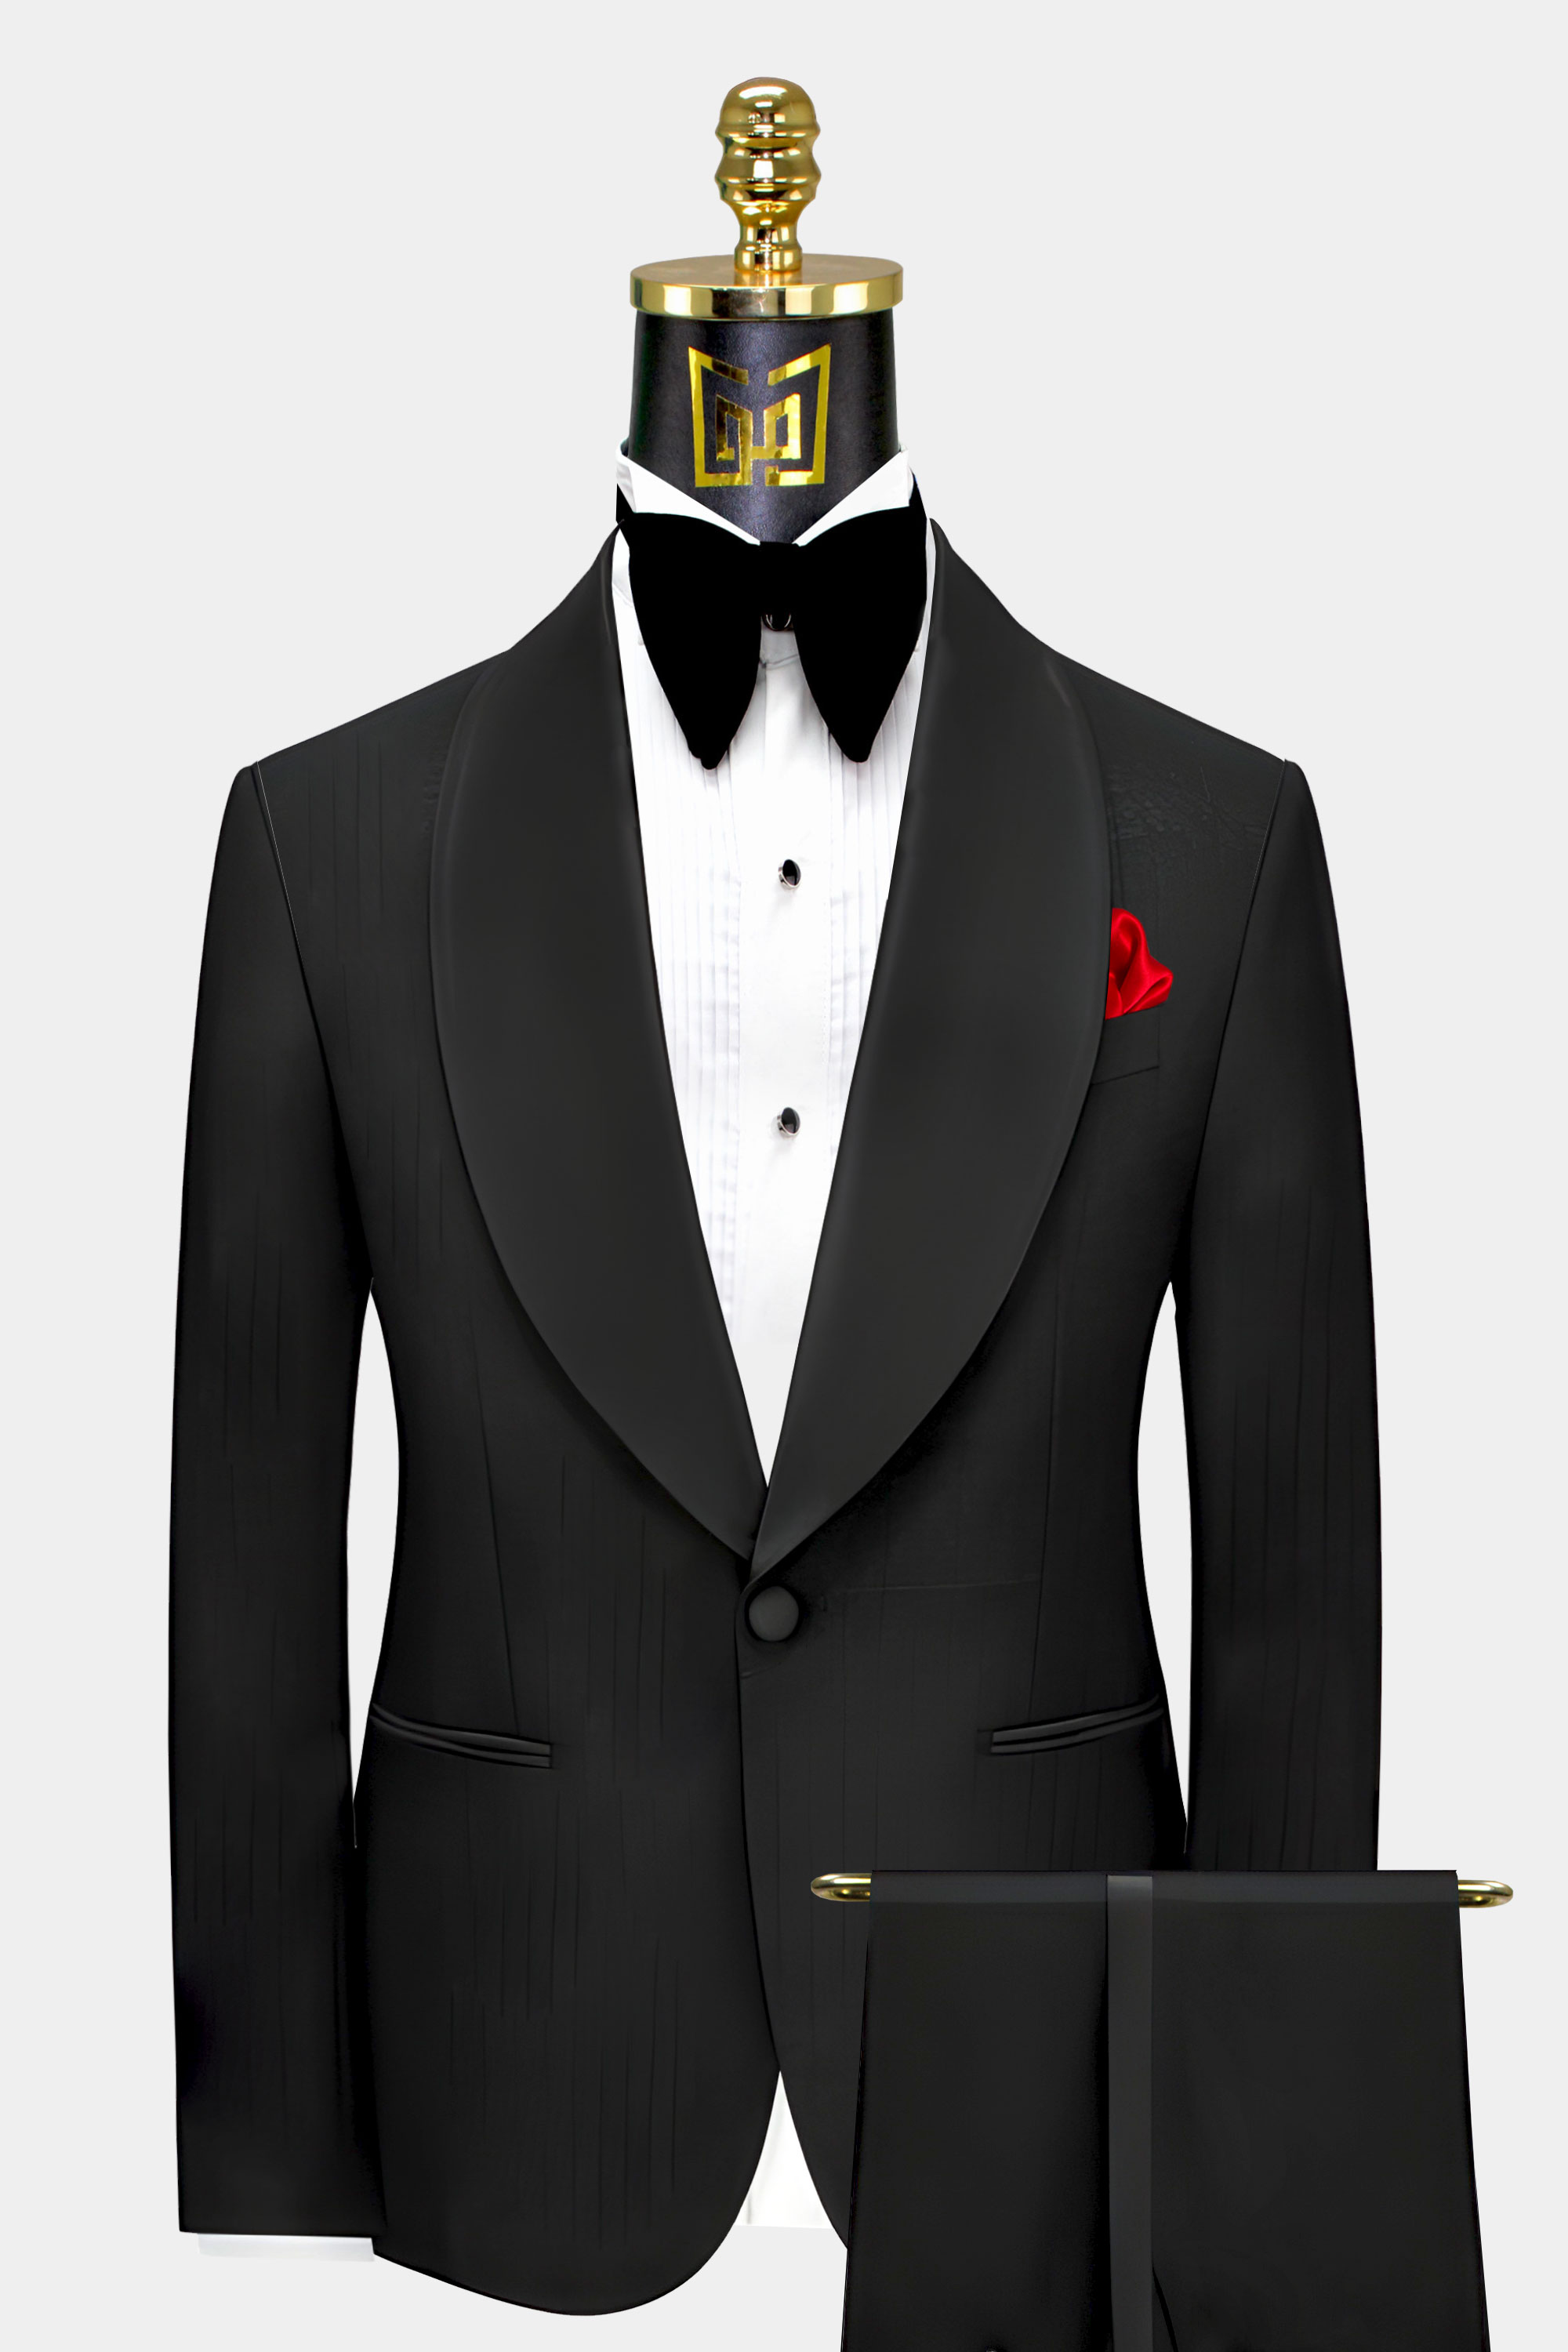 Black-Striped-Tuxedo-Groom-Wedding-Suit-For-Men-from-Gentlemansguru.com